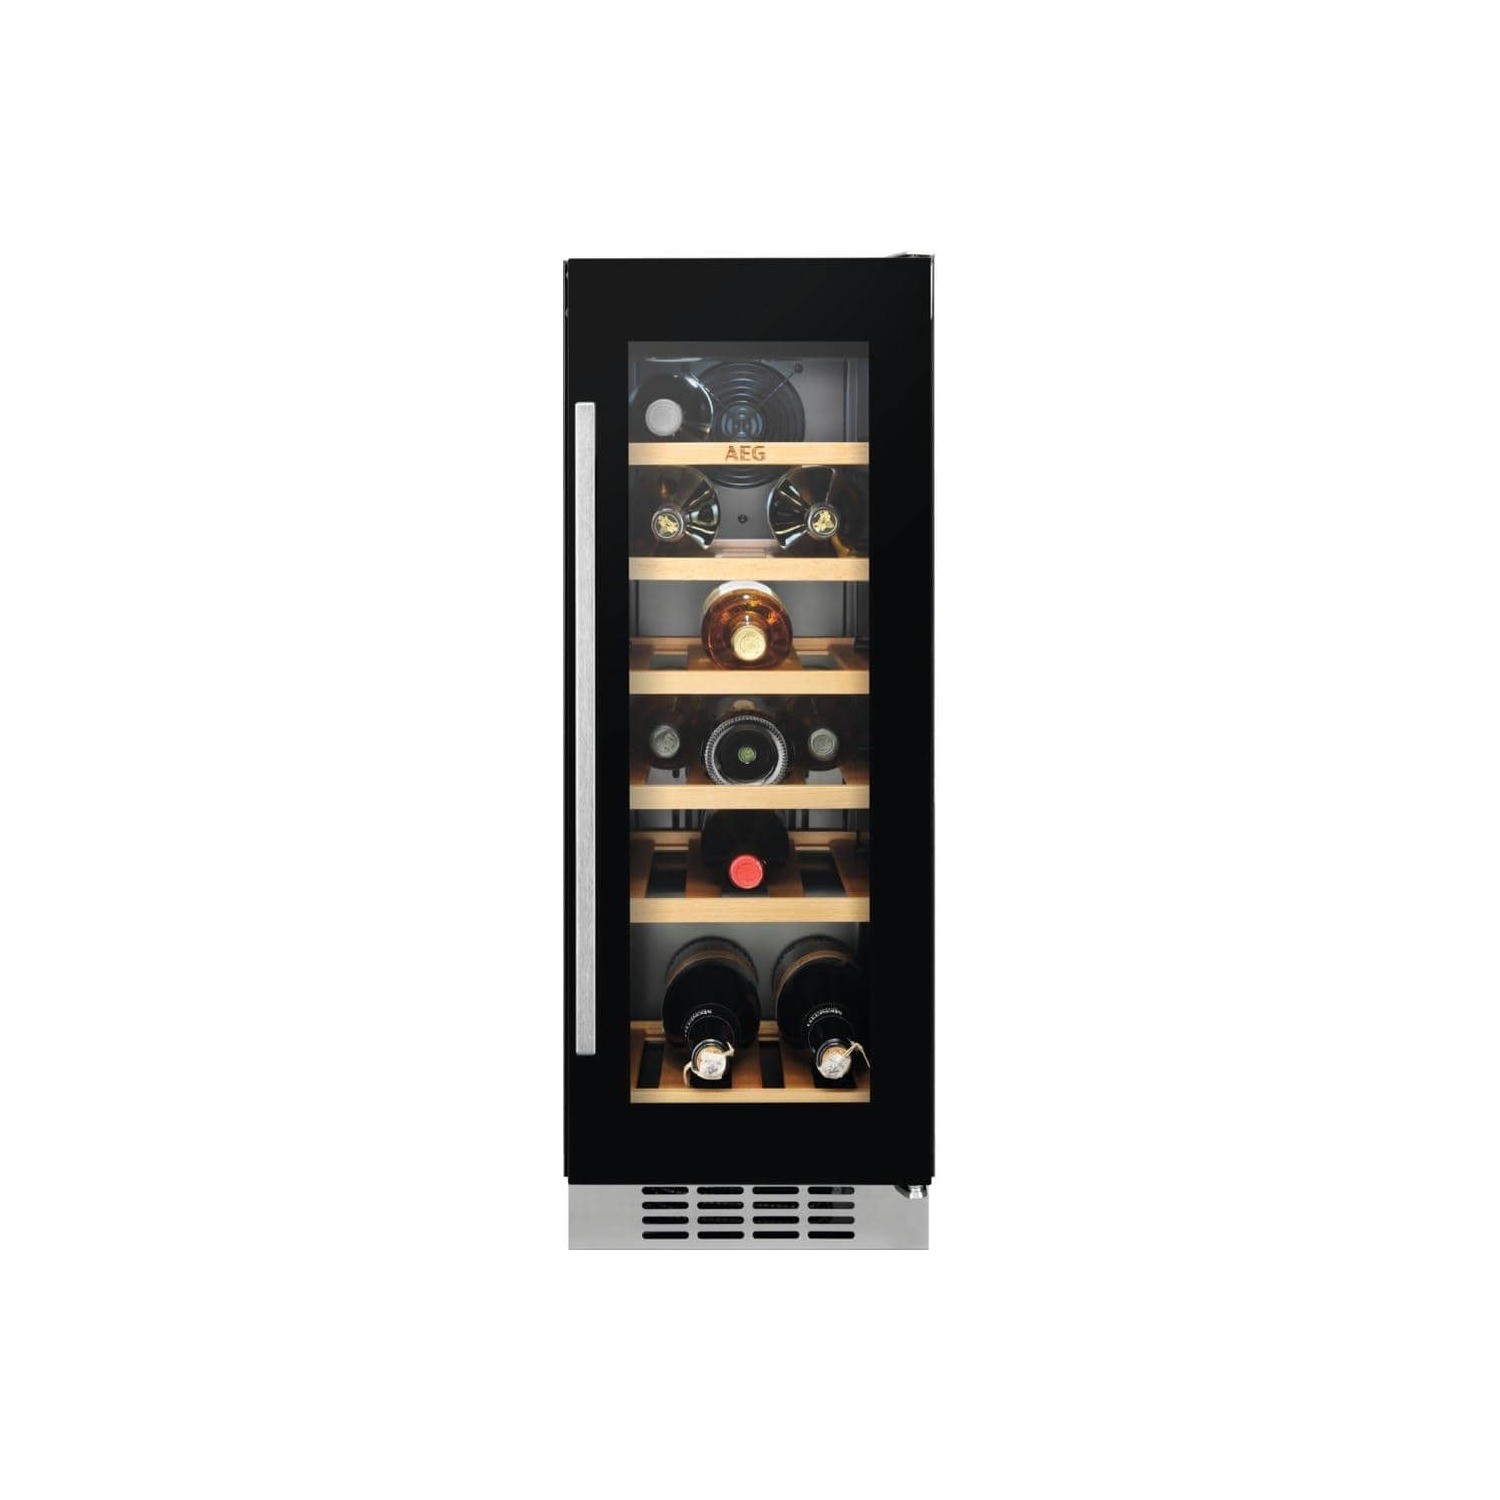 AEG 18 Bottle Single Zone Built in Wine Cooler- Black Framed Glass Door